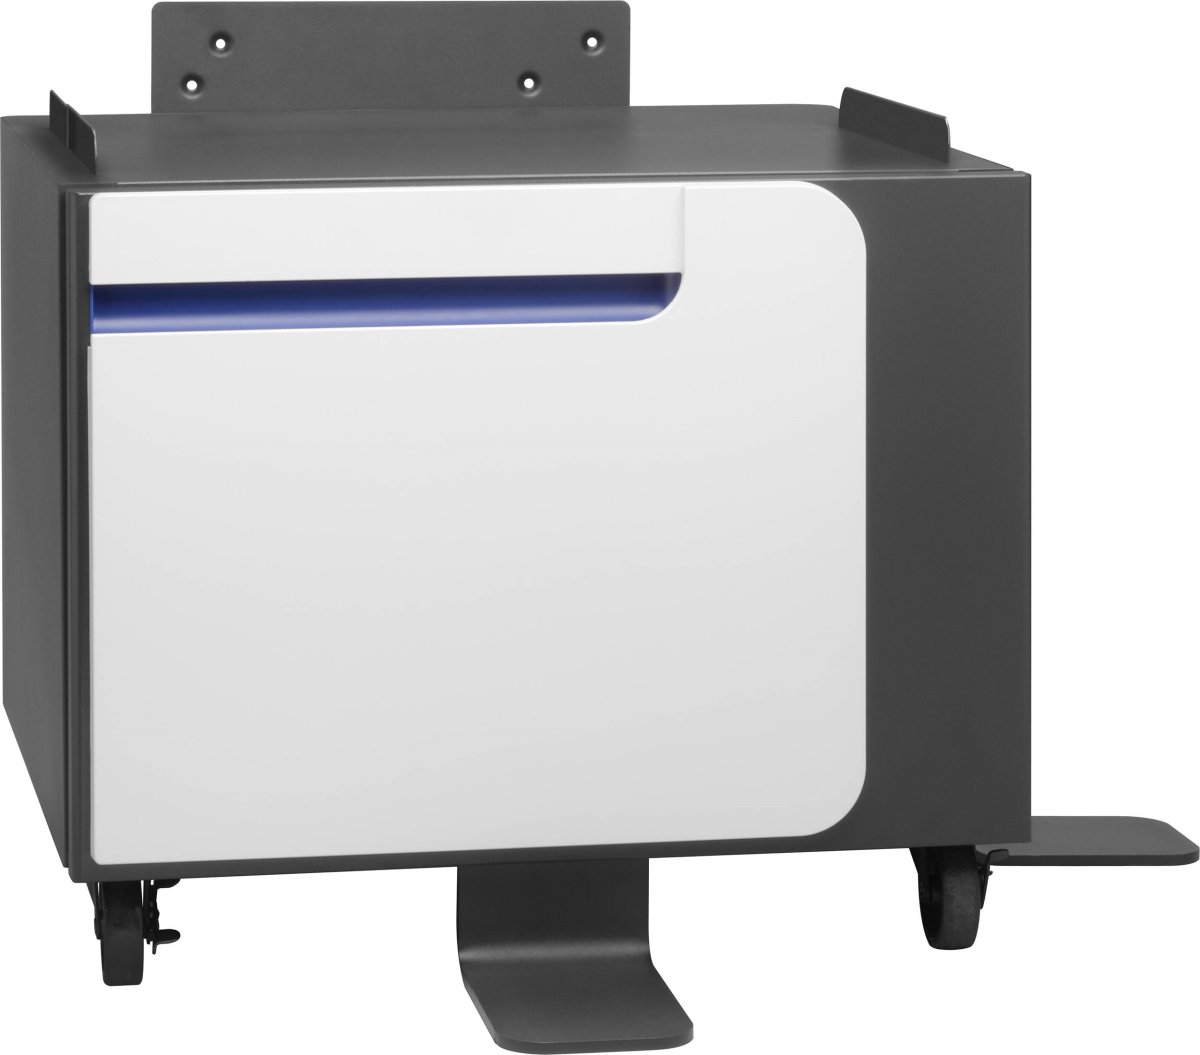 HP LaserJet Printer Kabinet